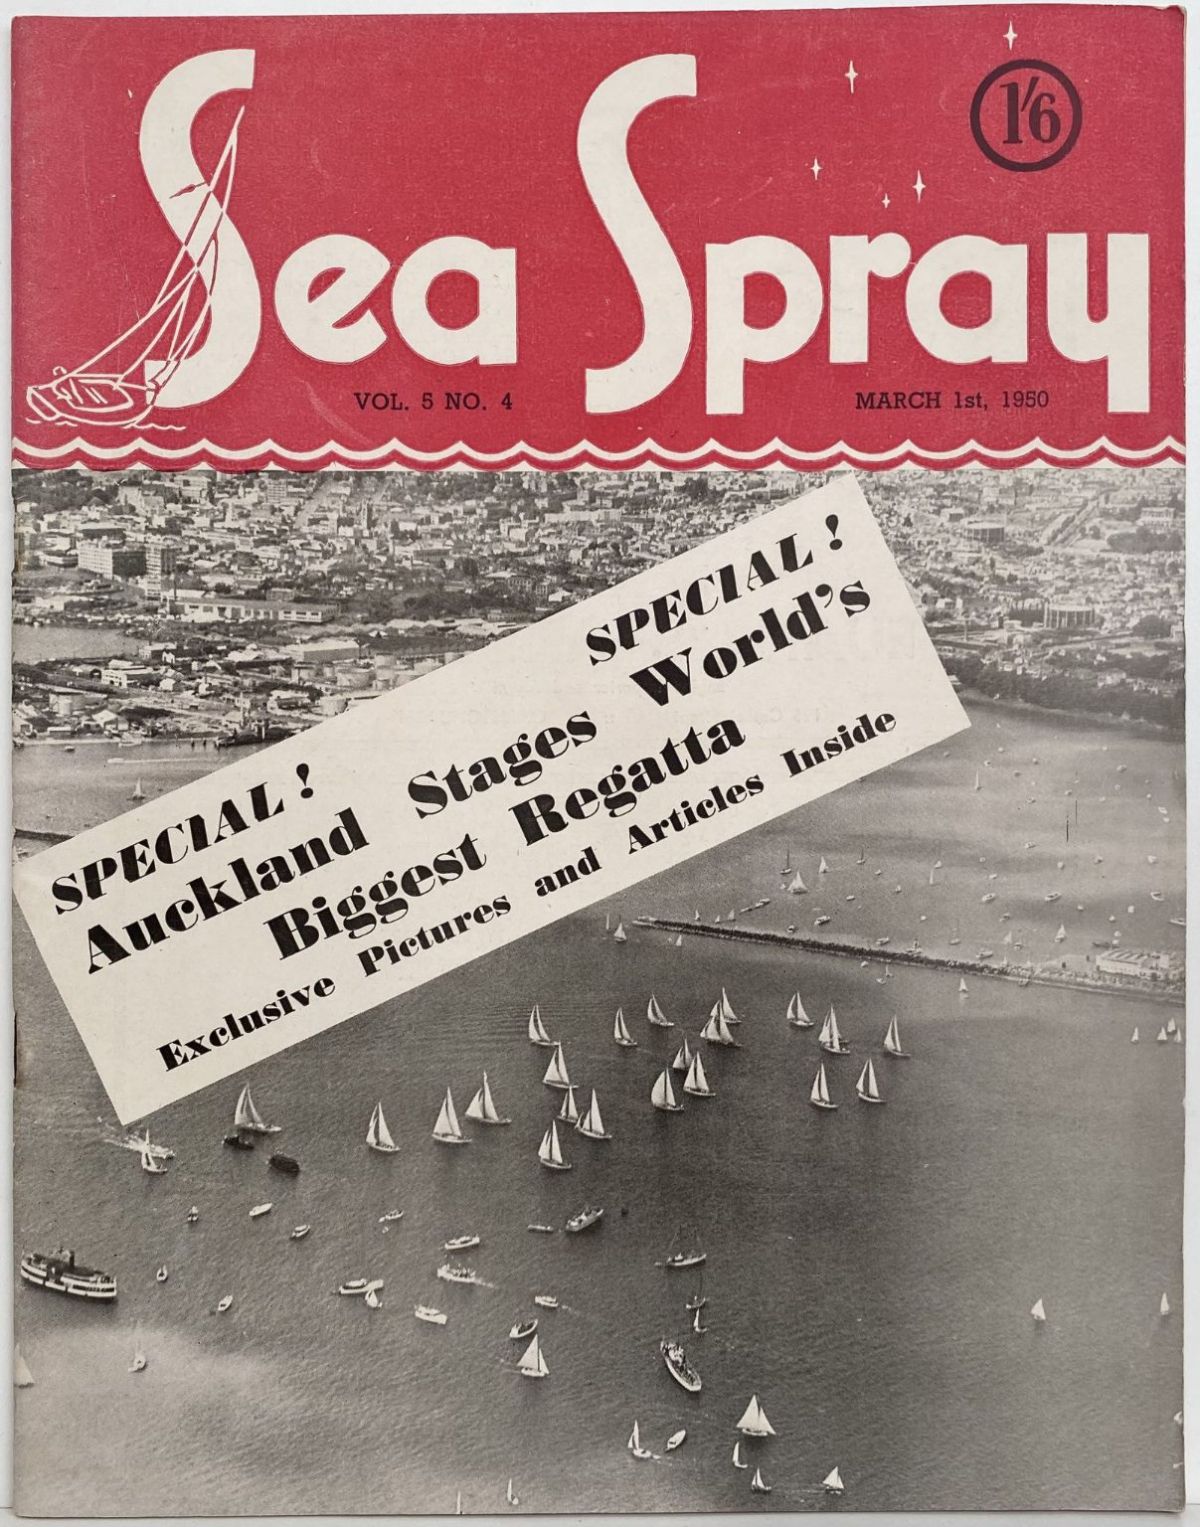 VINTAGE MAGAZINE: Sea Spray - Vol. 5, No. 4 - March 1950